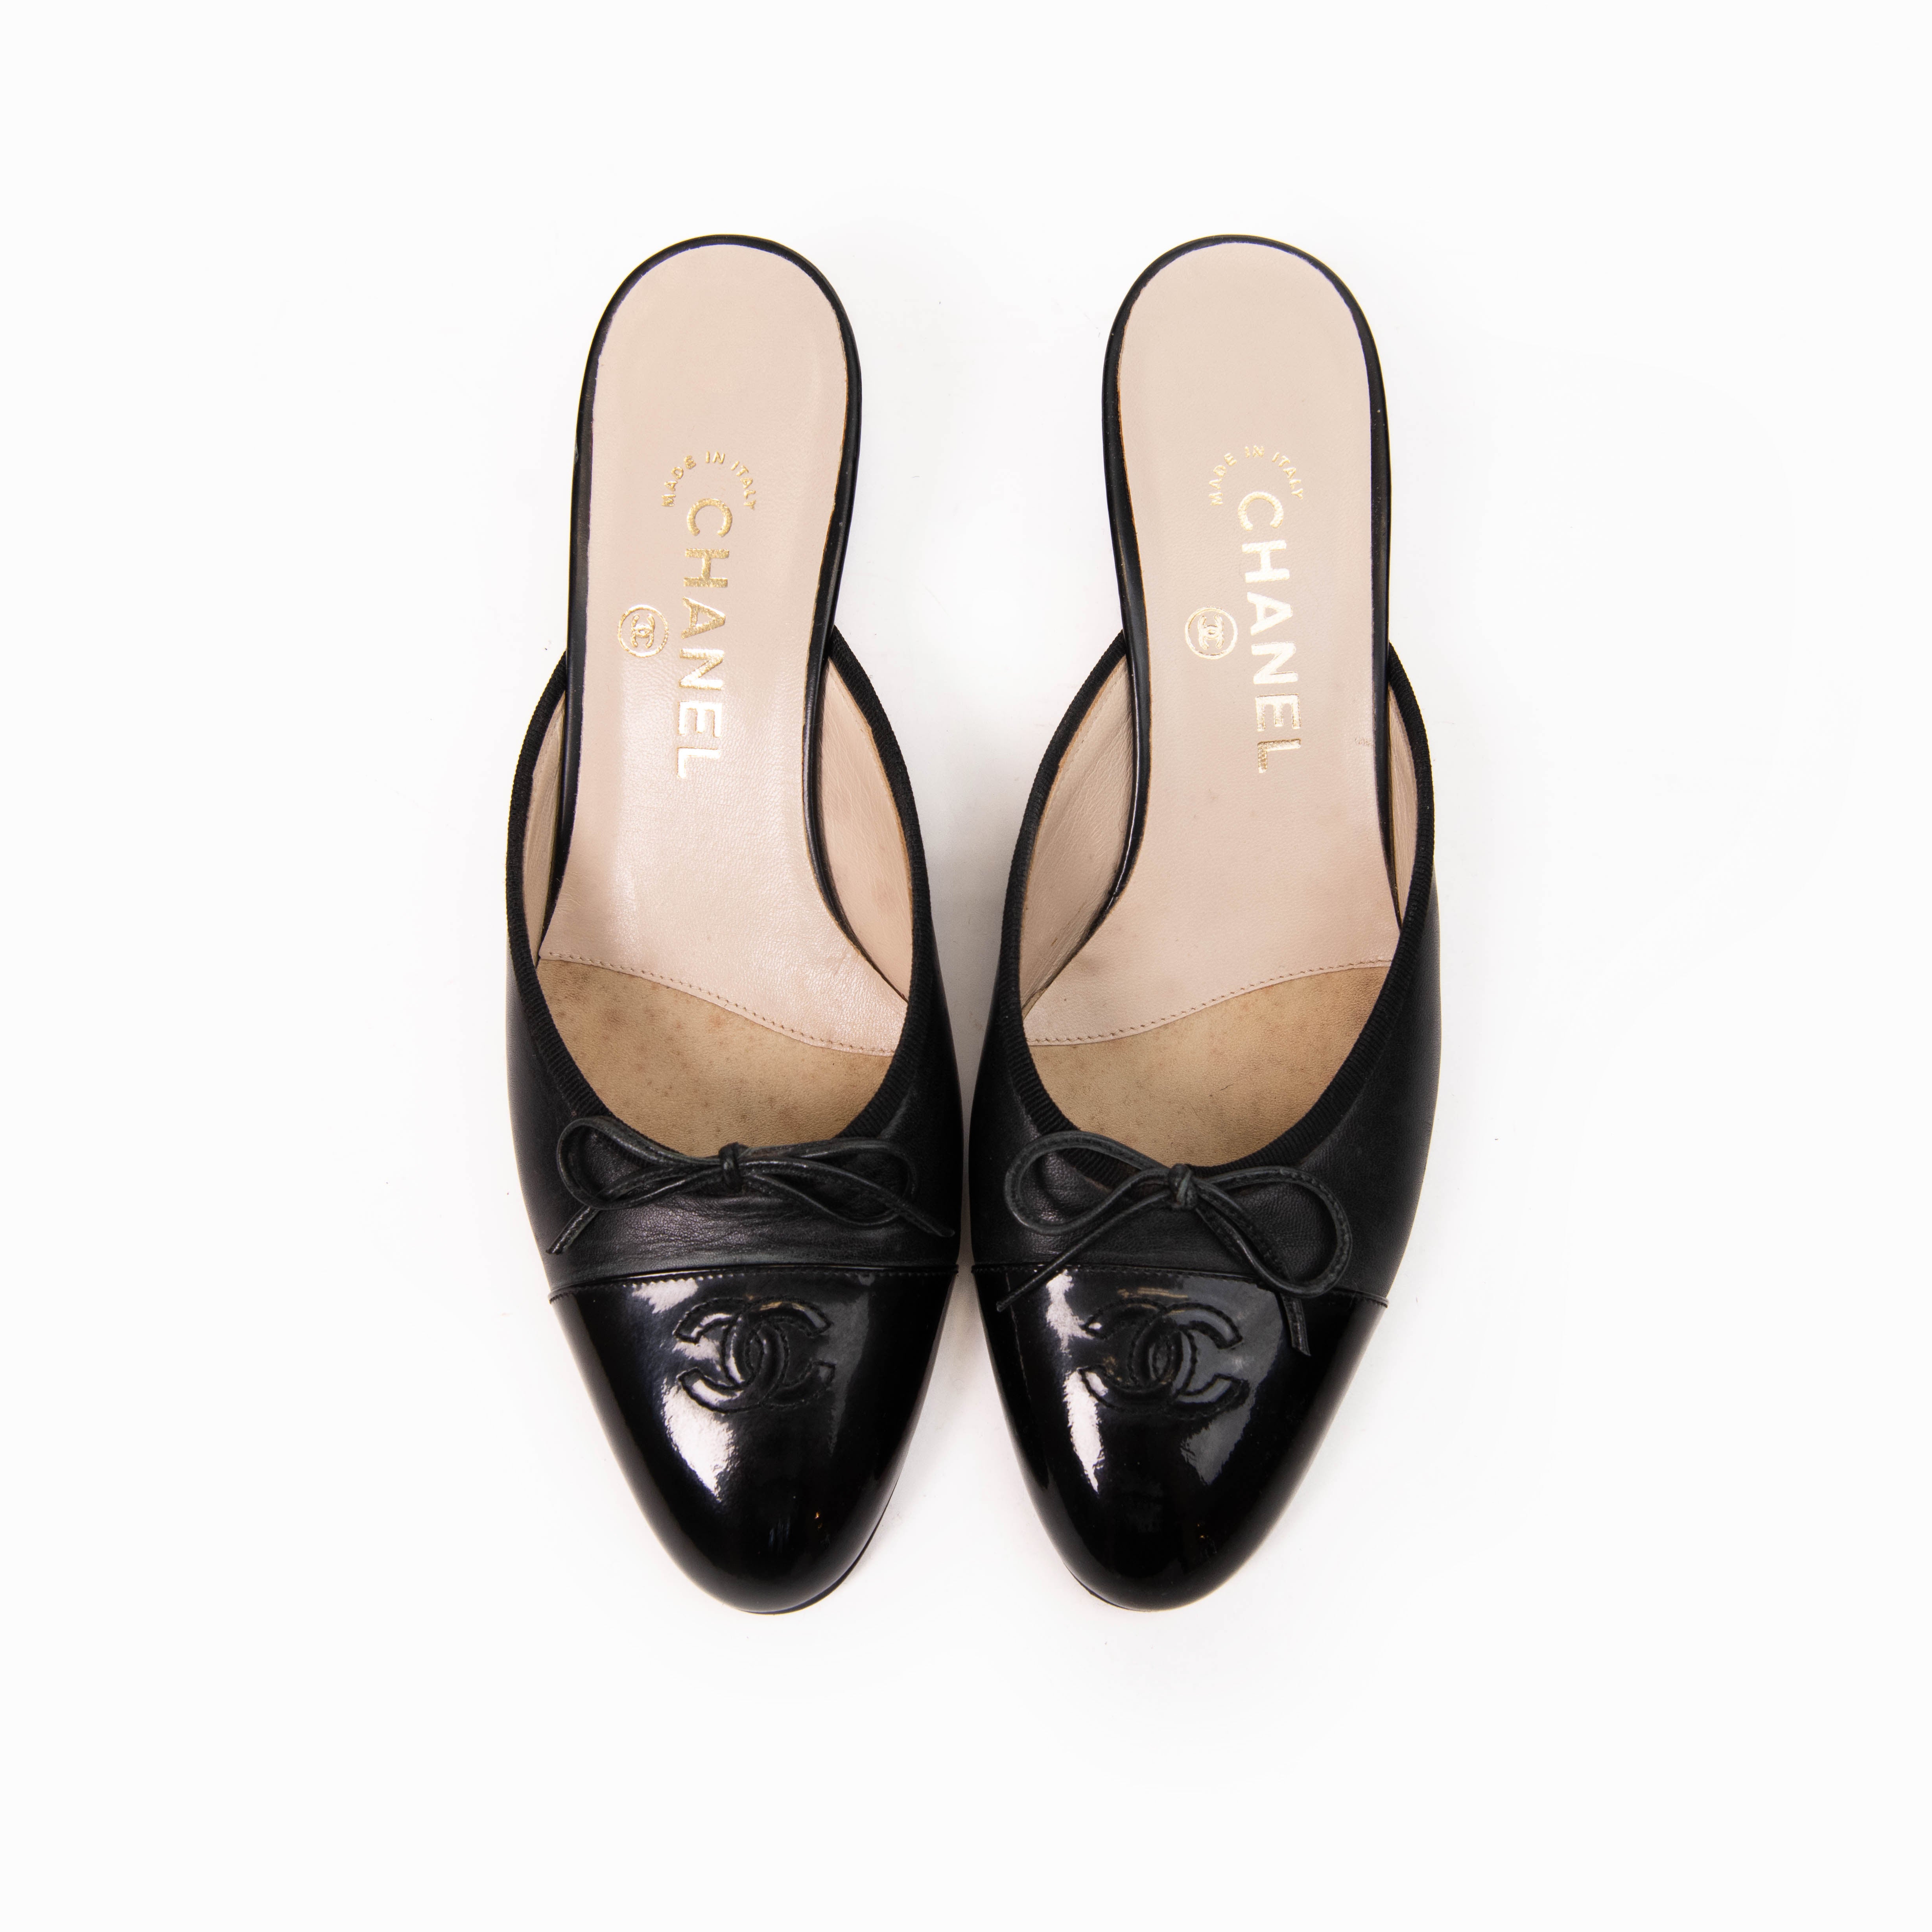 Chanel Black Leather Kitten Heels Mules Size 38.5